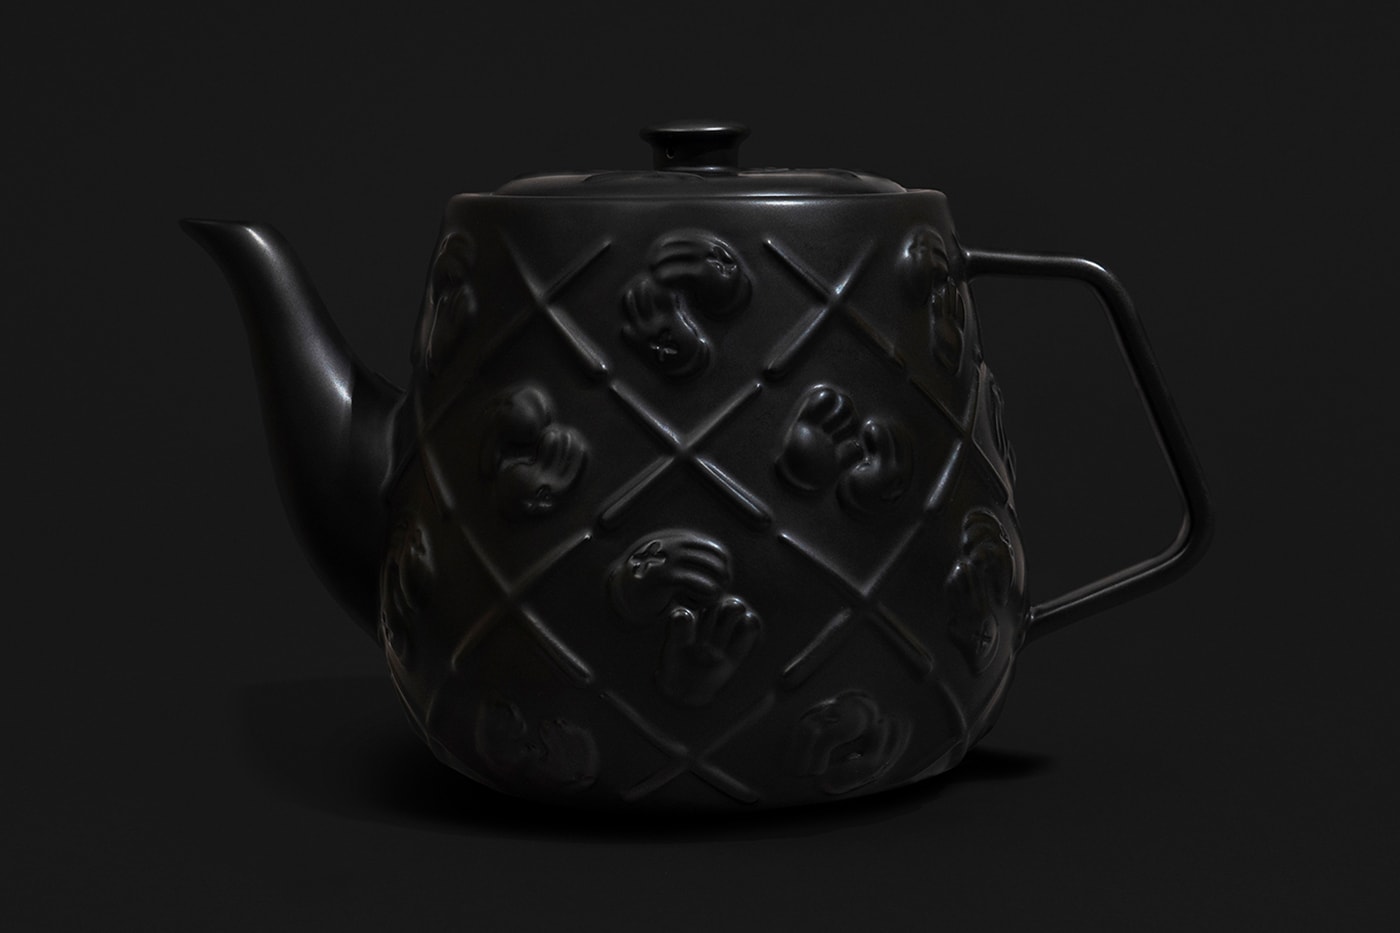 カウズの“XX”モノグラム柄ティーポットにブラックカラーが追加 KAWS Black Ceramic XX Monogram Teapot Release AllRightsReserved DDTstore Brian Donnelly